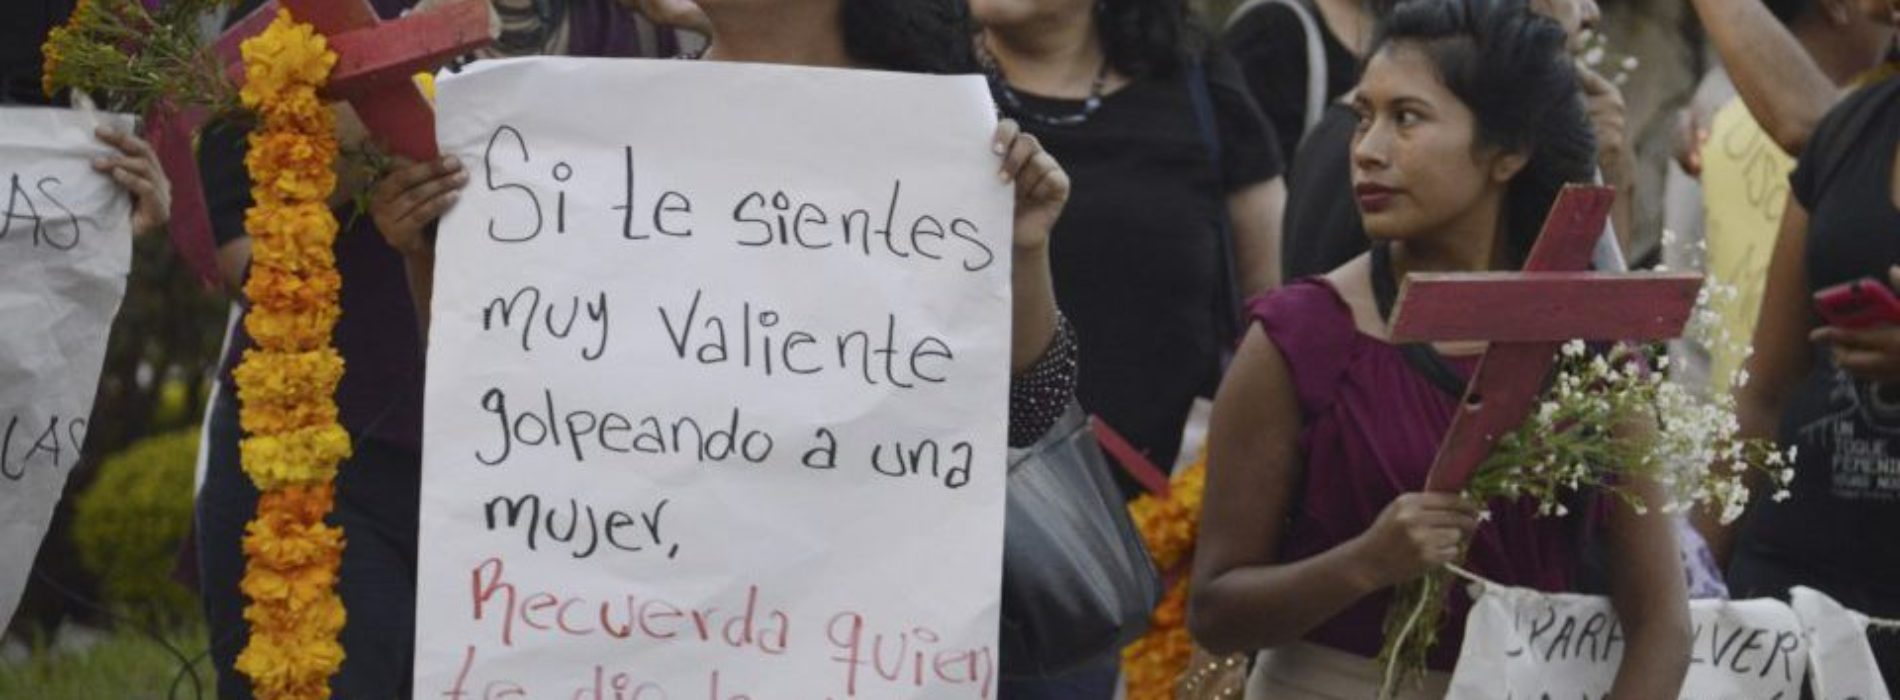 Hacen paro feminista contra el acoso en la Facultad de
Filosofía y Letras de la UNAM